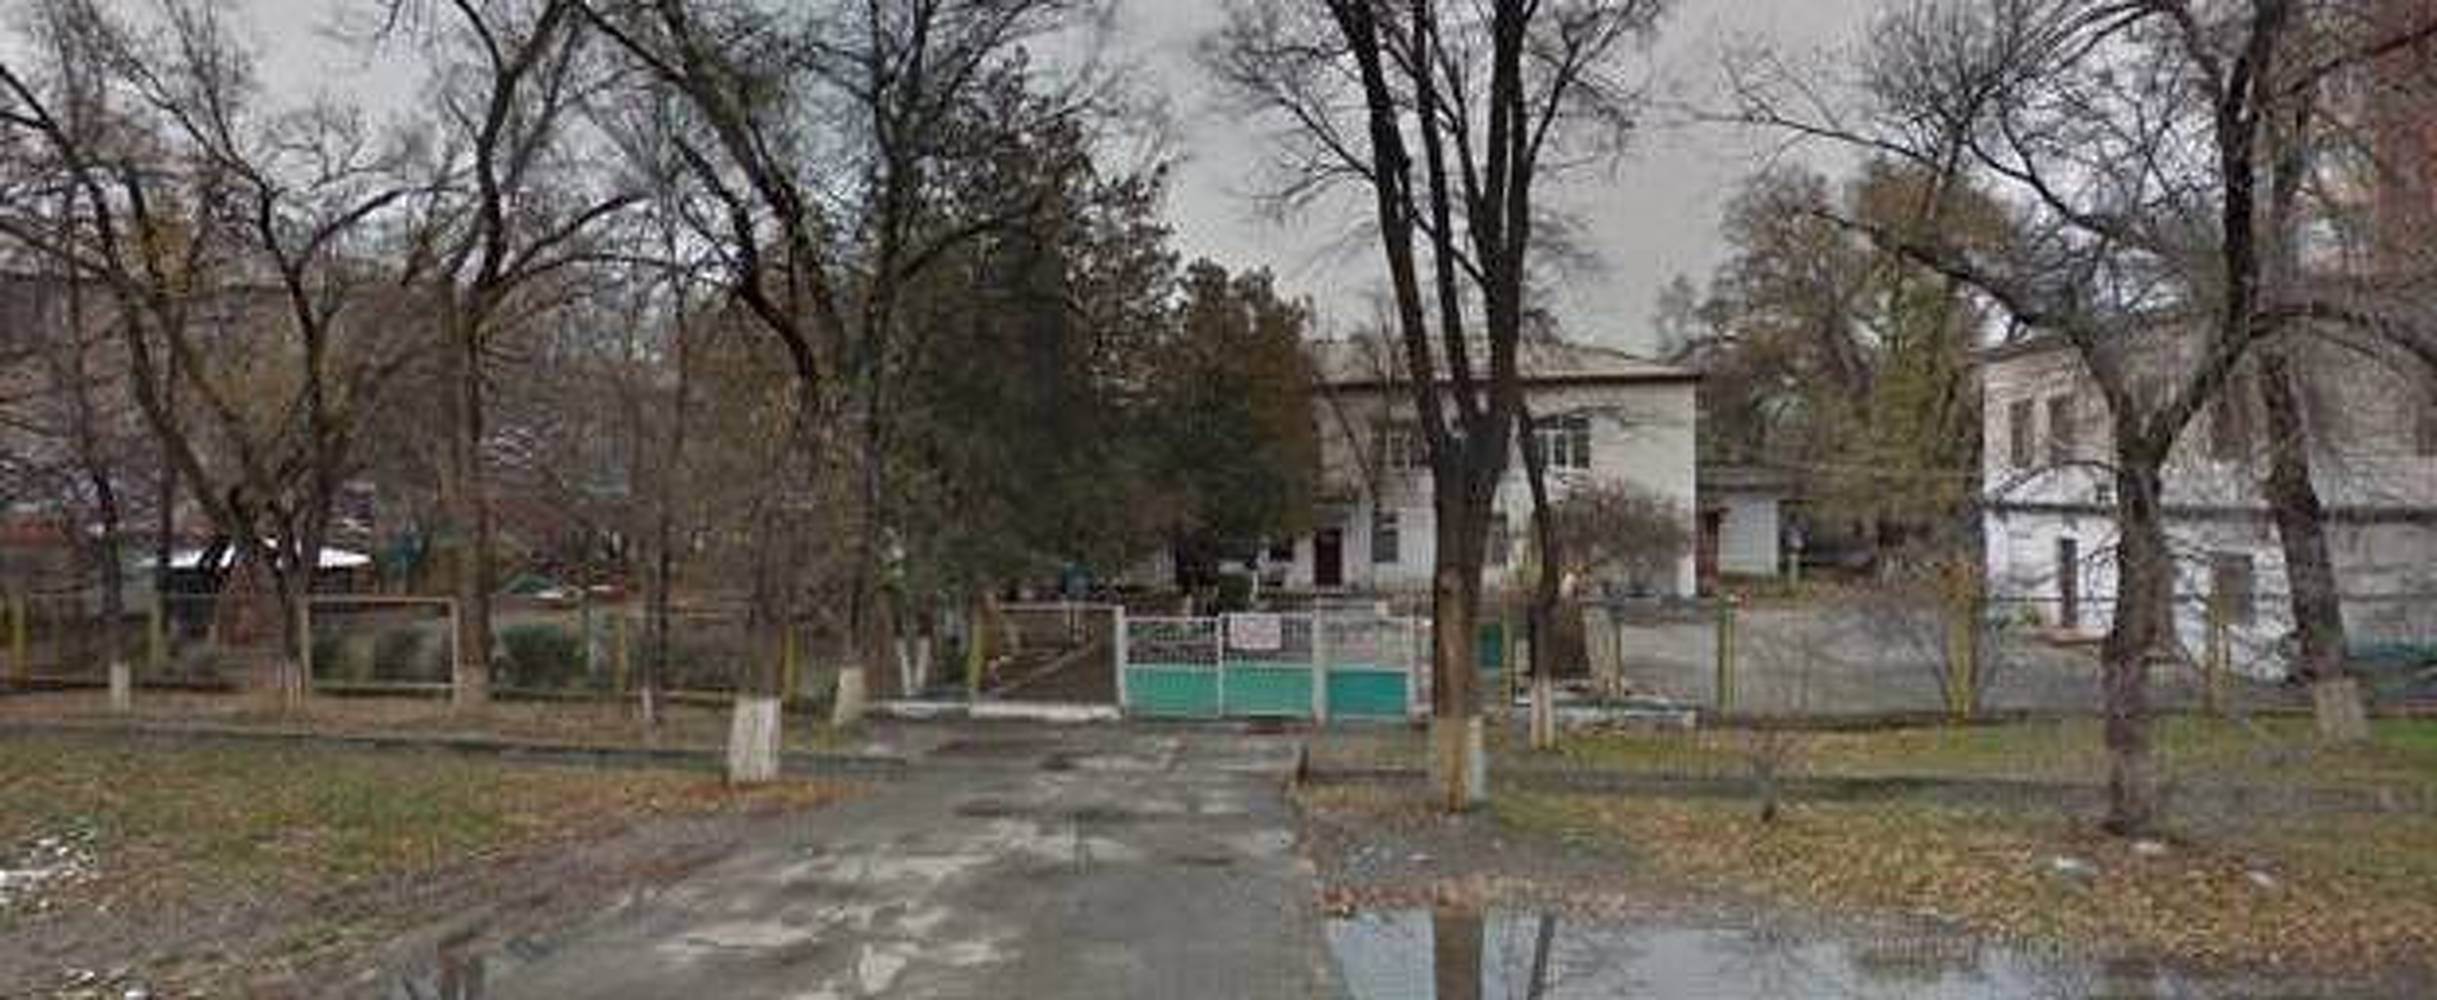 В Бишкеке муниципальный детсад отказался принимать детей. Забастовка? — Today.kg